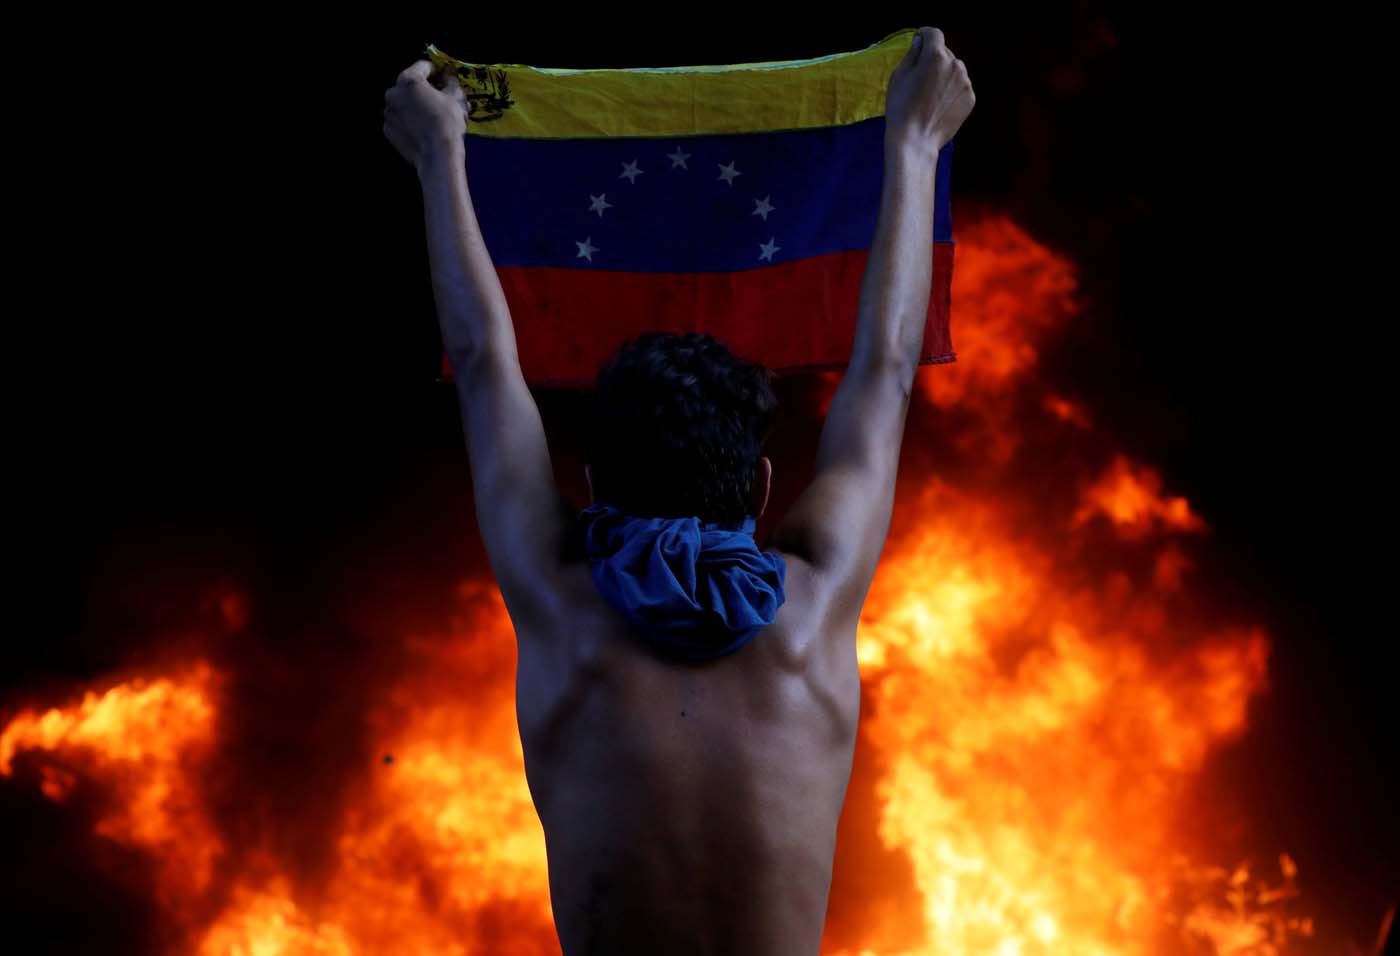 Human Rights Watch denunció al despiadado régimen de Maduro y llamó a resistir al populismo autoritario